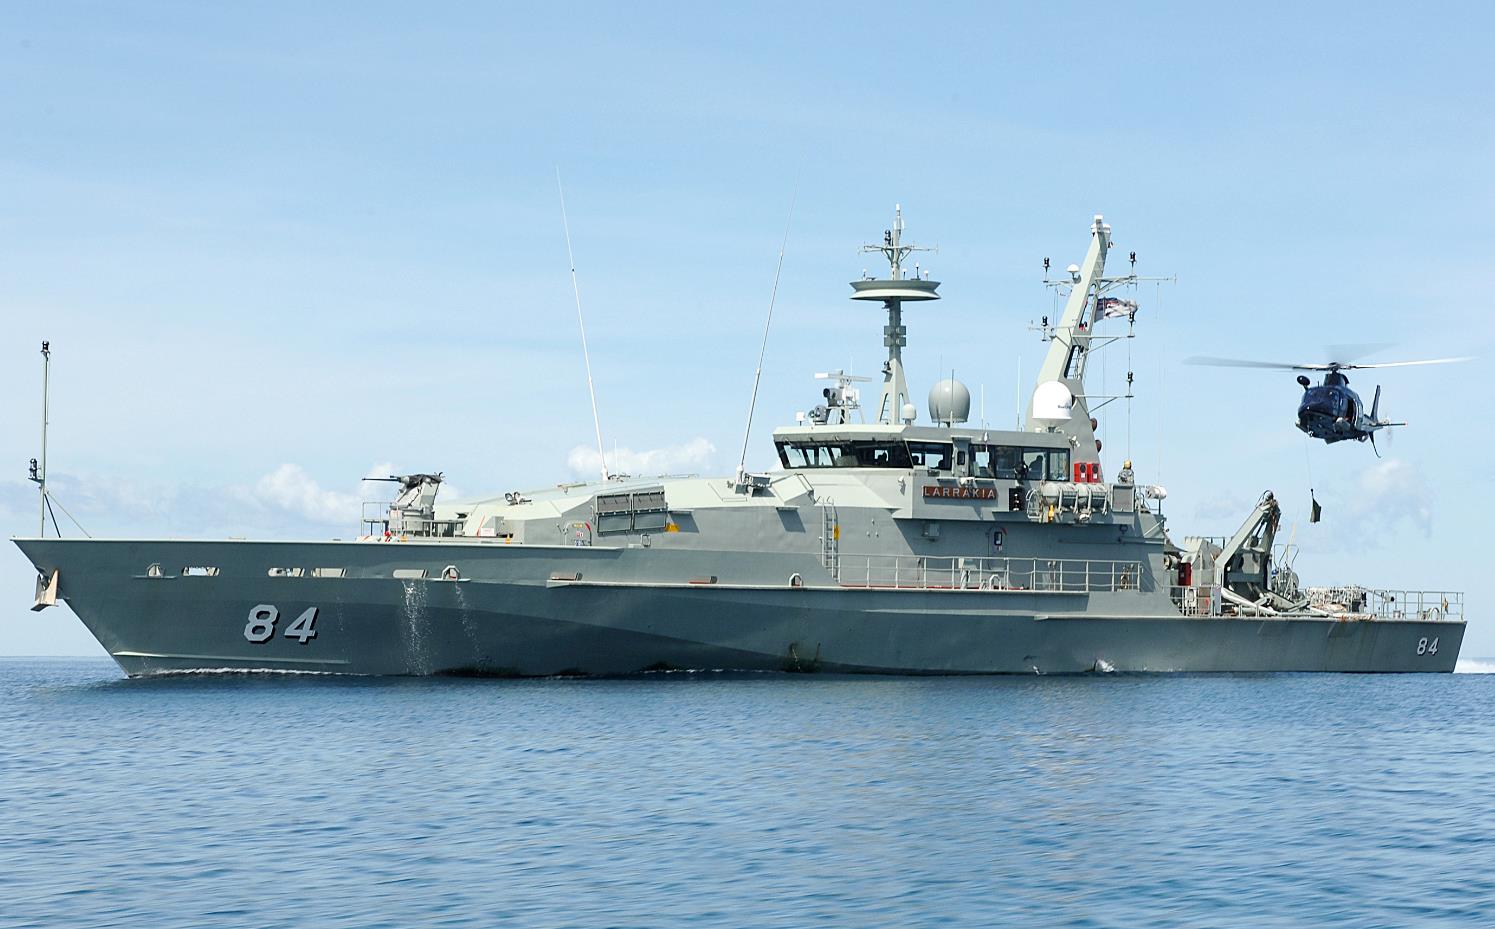 HMAS Larrakia (ACPB 84) #2